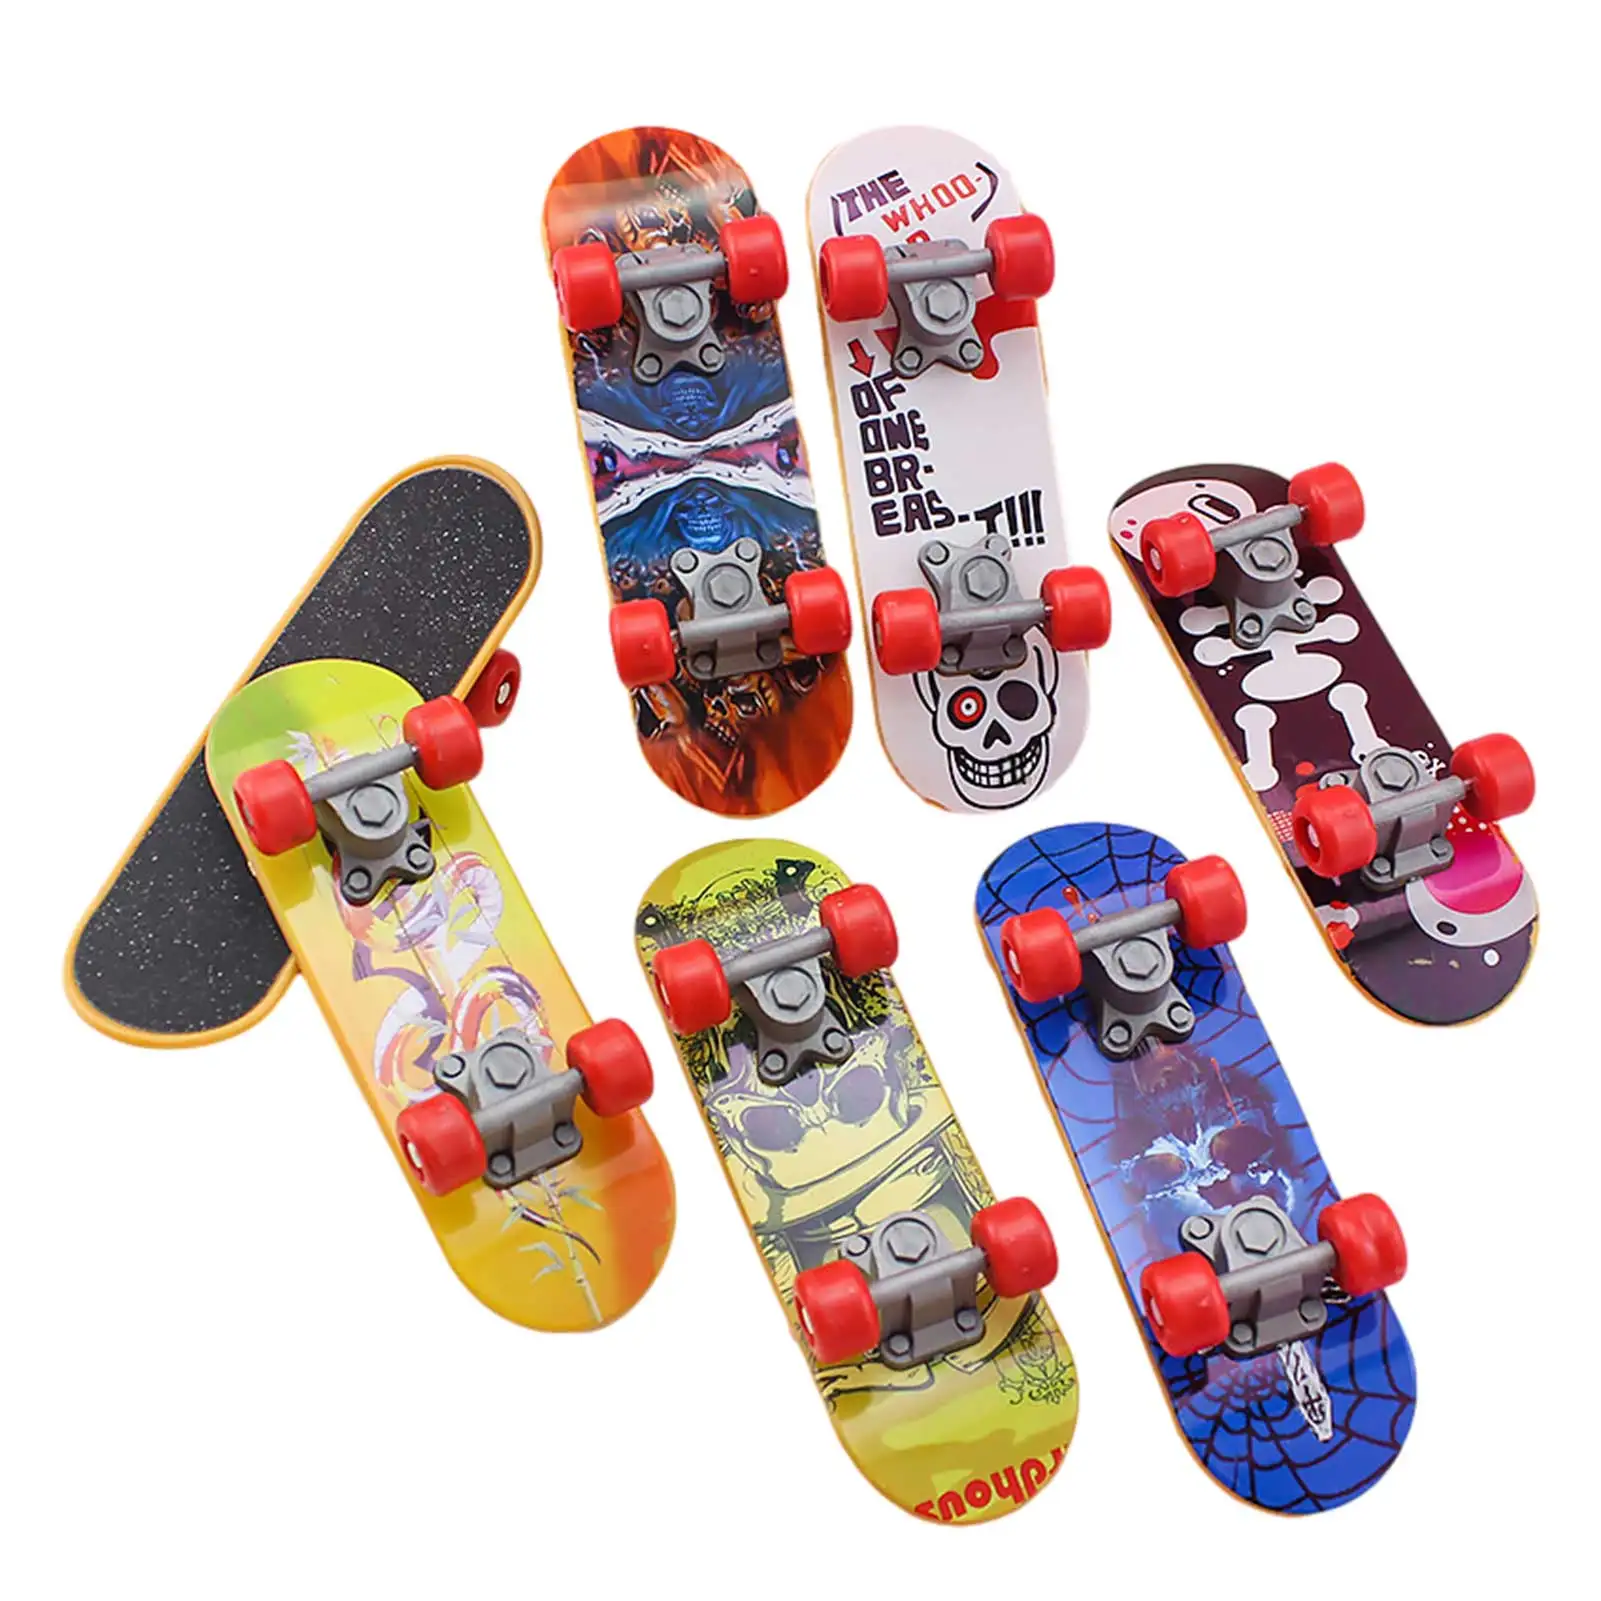 Finger Board Truck Mini Skateboard Spielzeug Junge Gesc Kinder Junge Kinder X4B8 